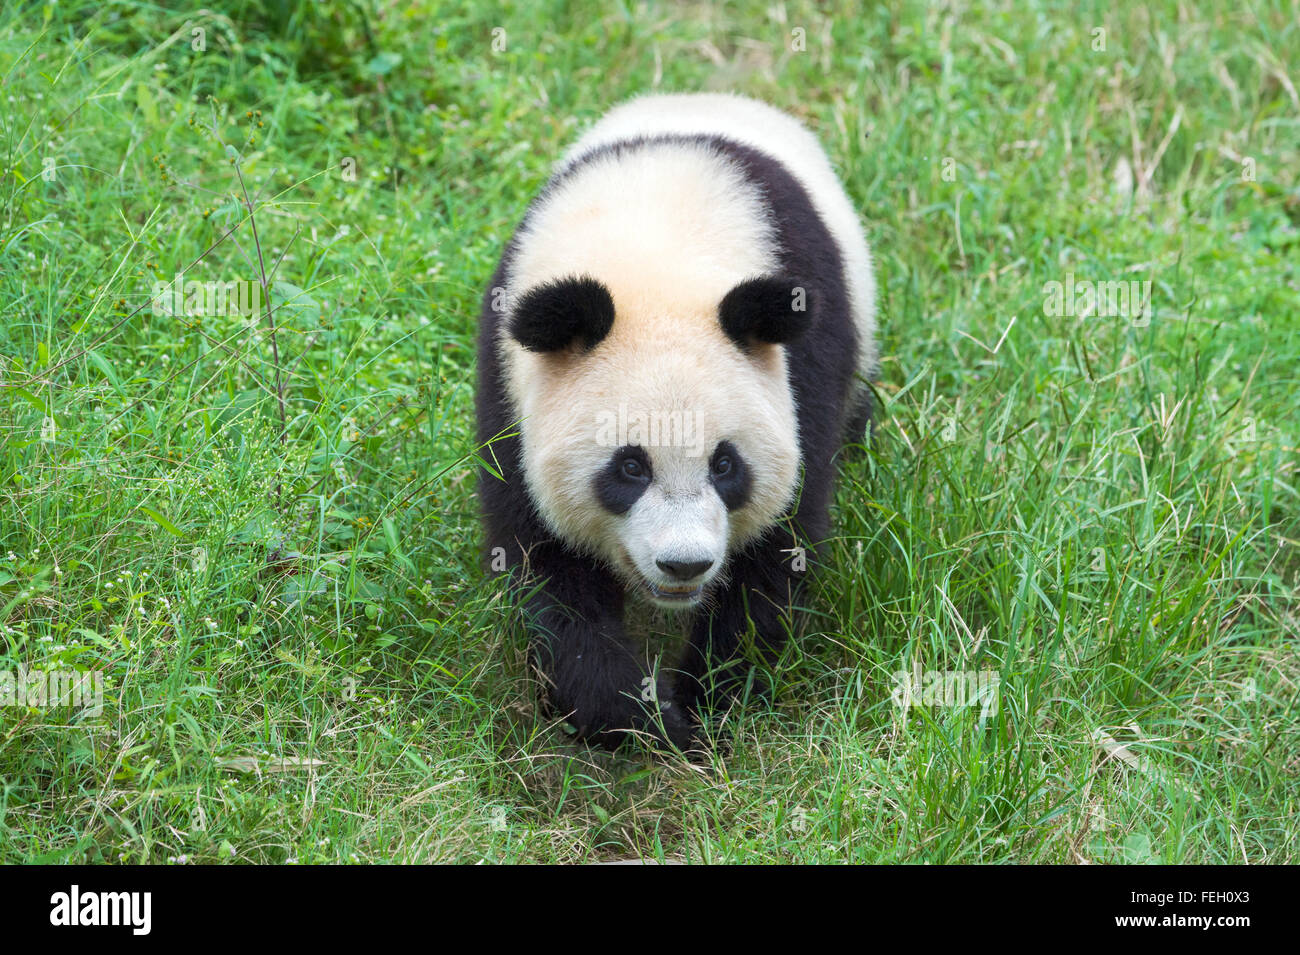 Panda géant (Ailuropoda melanoleuca), de la Chine et de Conservation Centre de recherche pour les pandas géants, Chengdu, Sichuan, Chine Banque D'Images